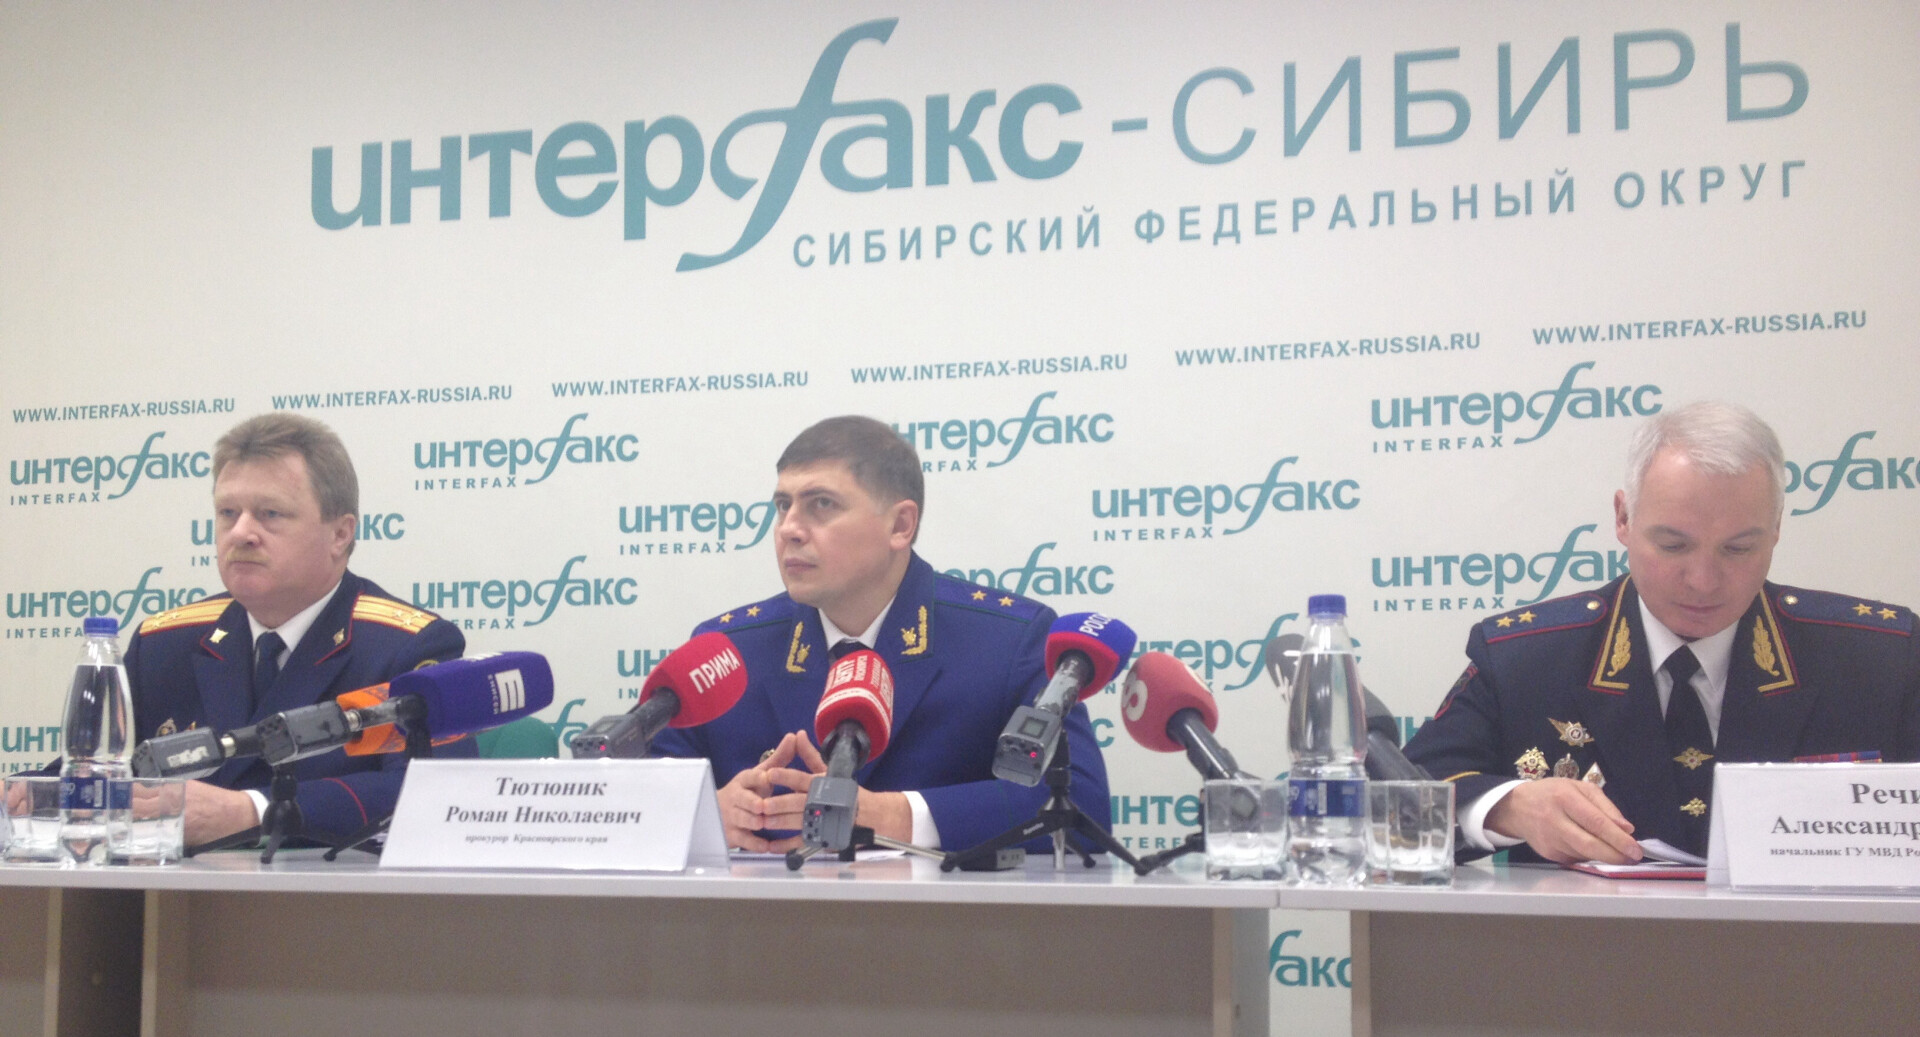 Уголовное дело в отношении экс-директора УК в Красноярске о присвоении более 100 млн рублей прекращено - МВД